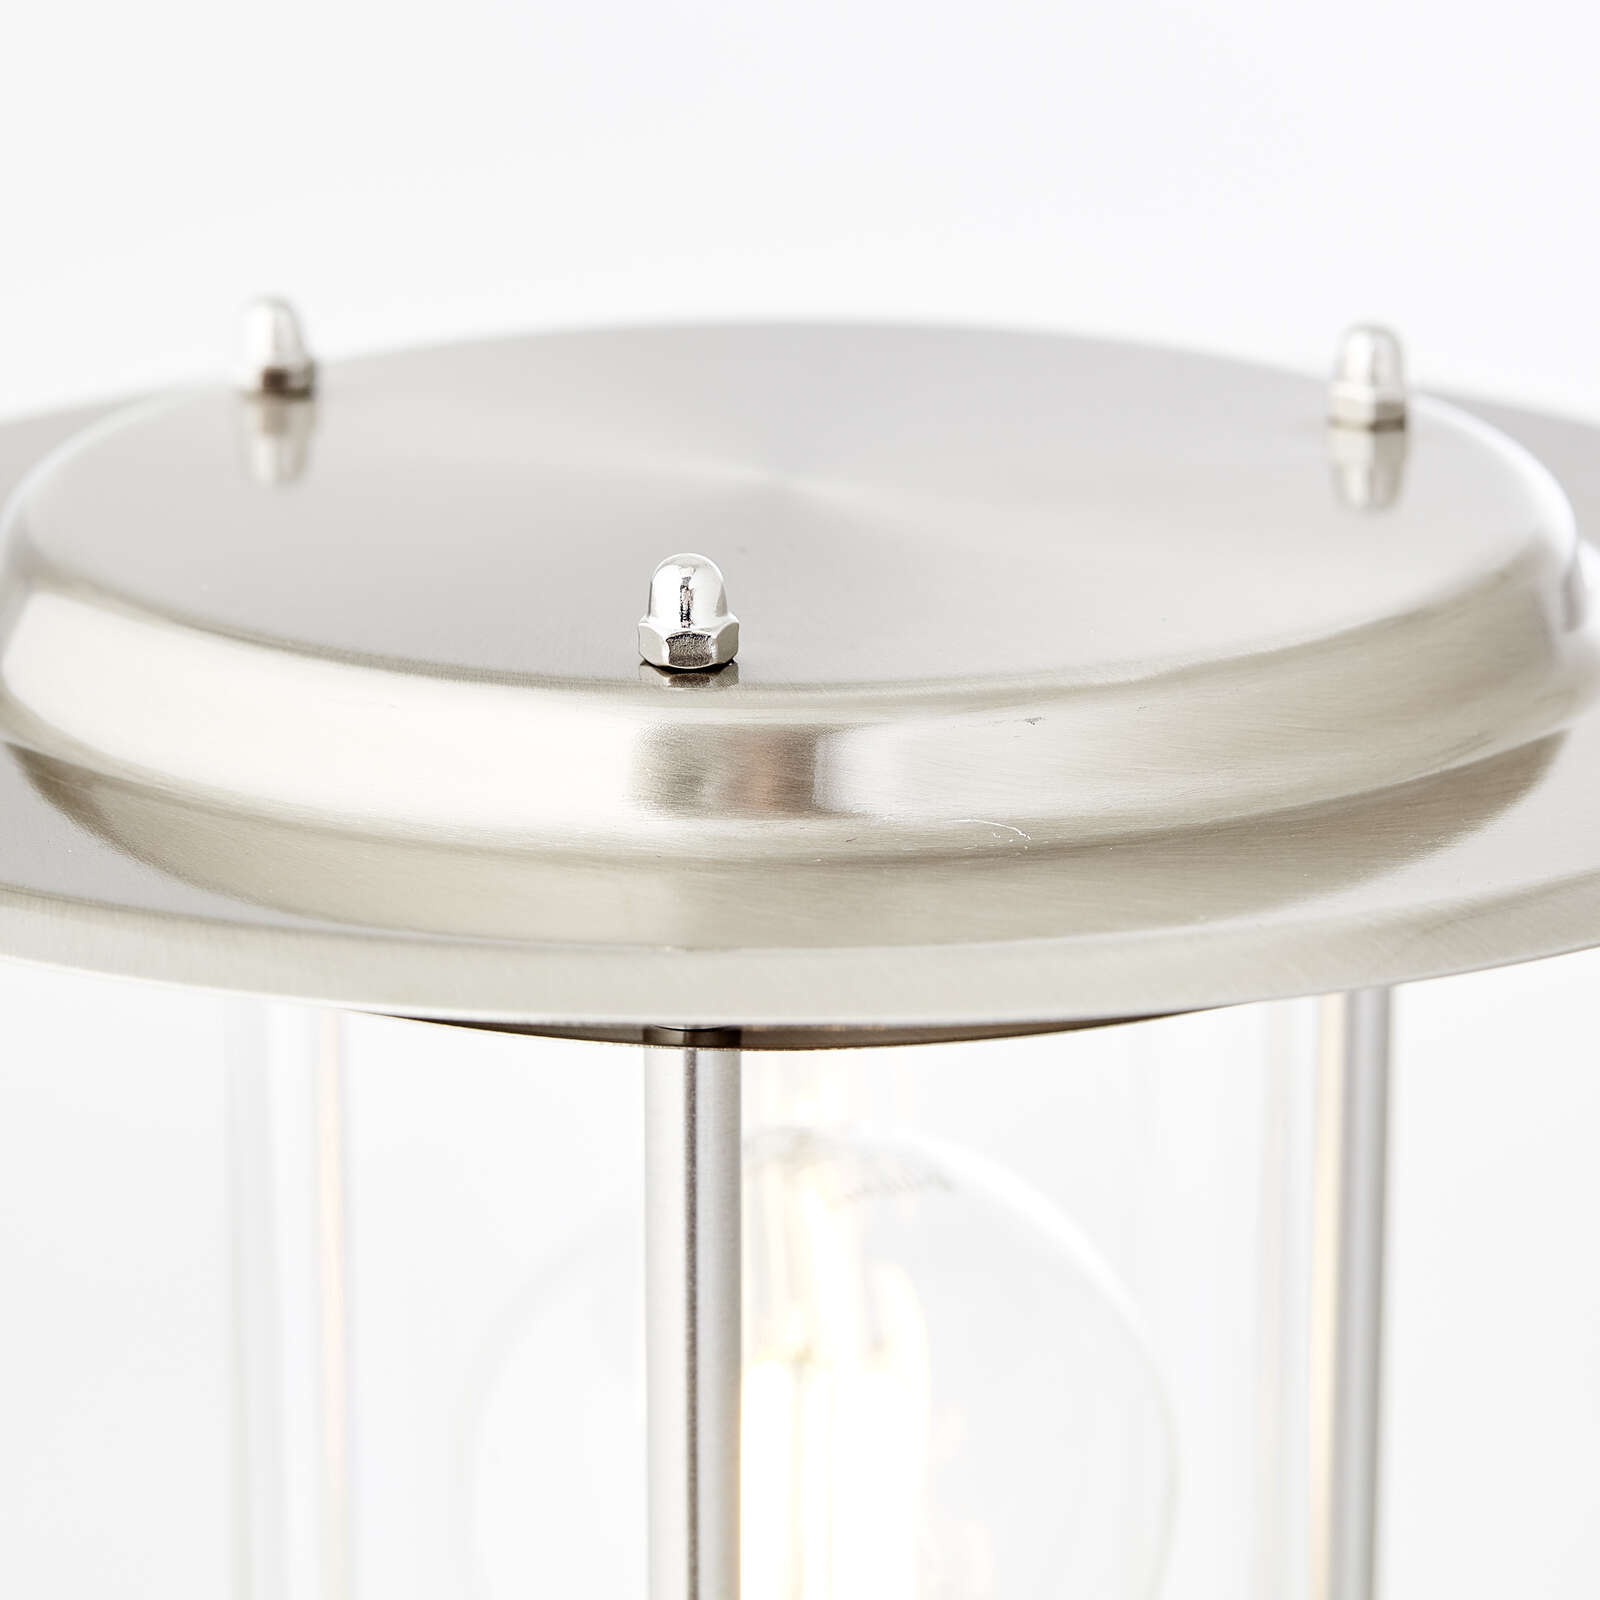             Lámpara de pie metálica para exterior - Wilma 2 - Metallic
        